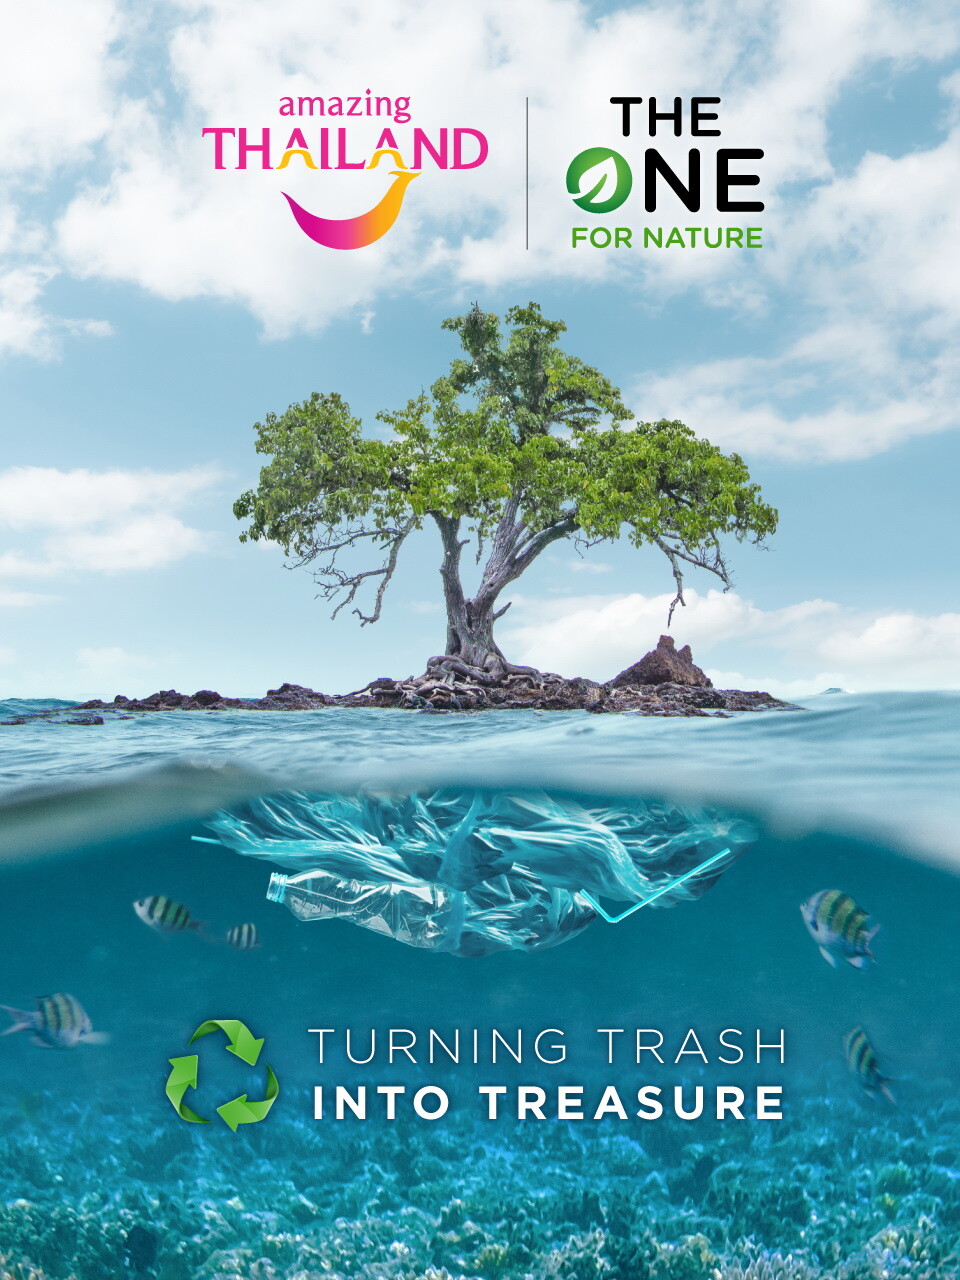 กลับมาอีกครั้งกับโครงการ "The One For Nature" ครั้งที่ 2 เพื่ออนุรักษ์ธรรมชาติและการท่องเที่ยวไทย โดยการท่องเที่ยวแห่งประเทศไทย